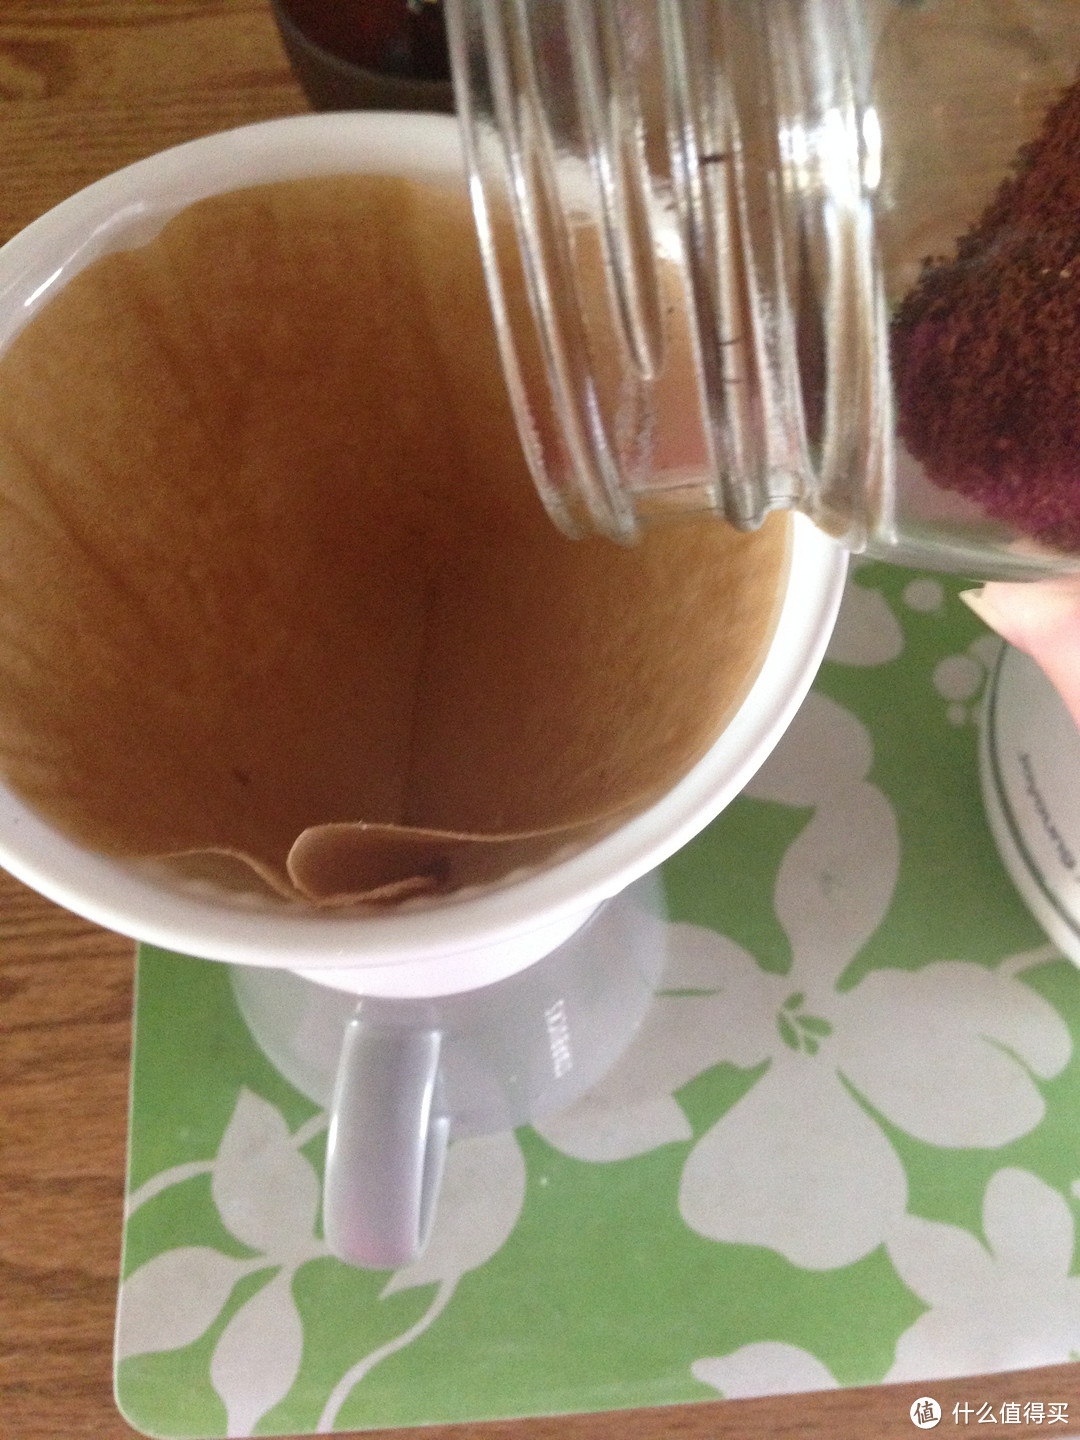 将磨好的咖啡粉放入滤杯中